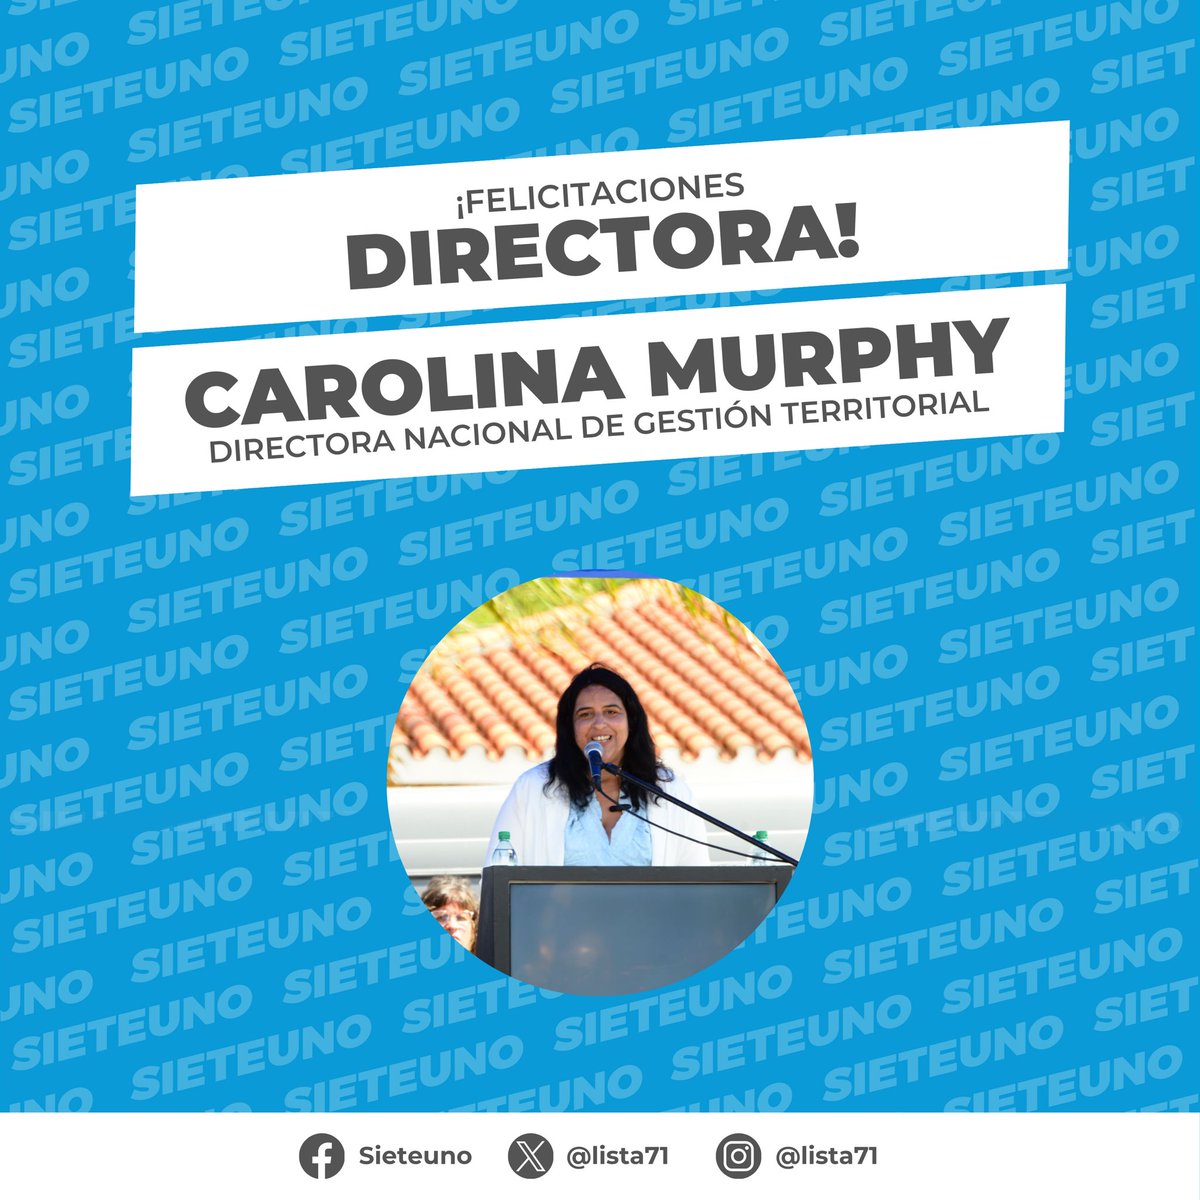 Felicitaciones @CarolinaMurphy_ en tu nueva responsabilidad como Directora Nacional en Gestión Territorial del @midesuy 💪 ¡Muchos éxitos en esta etapa!